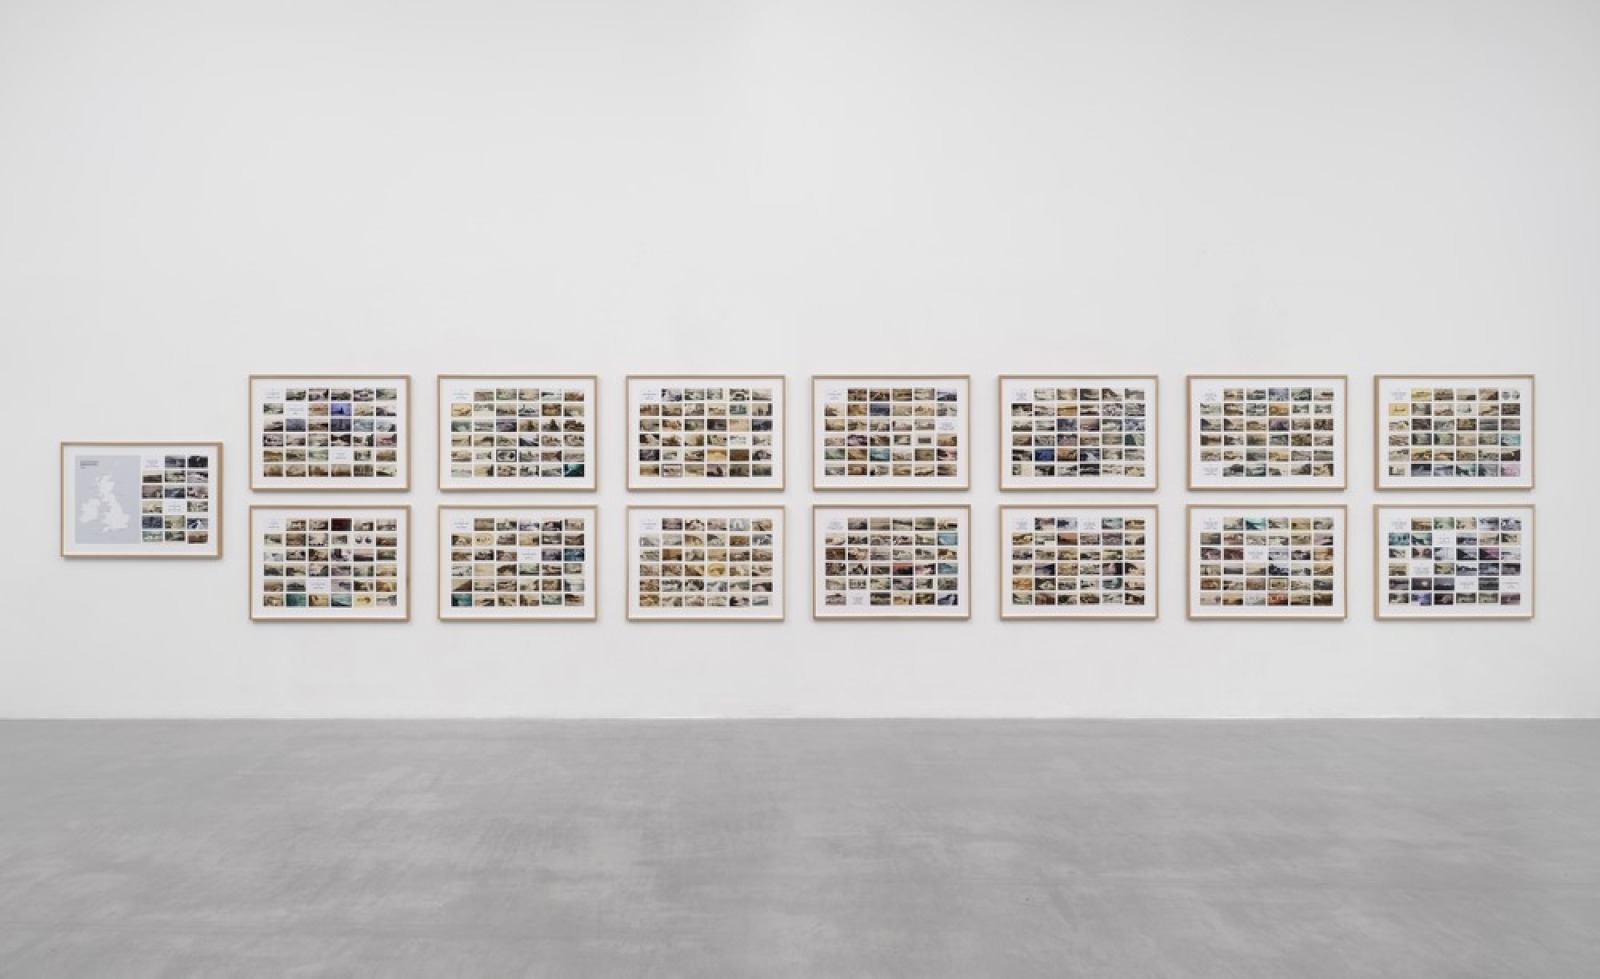 Susan Hiller, On the Edge, 2015, Cartes postales, impression d’archives, 15 cadres, 77,5 × 107,3 × 3,2 cm chacun. Courtesy Lisson Gallery, Photographie de Jack Hems